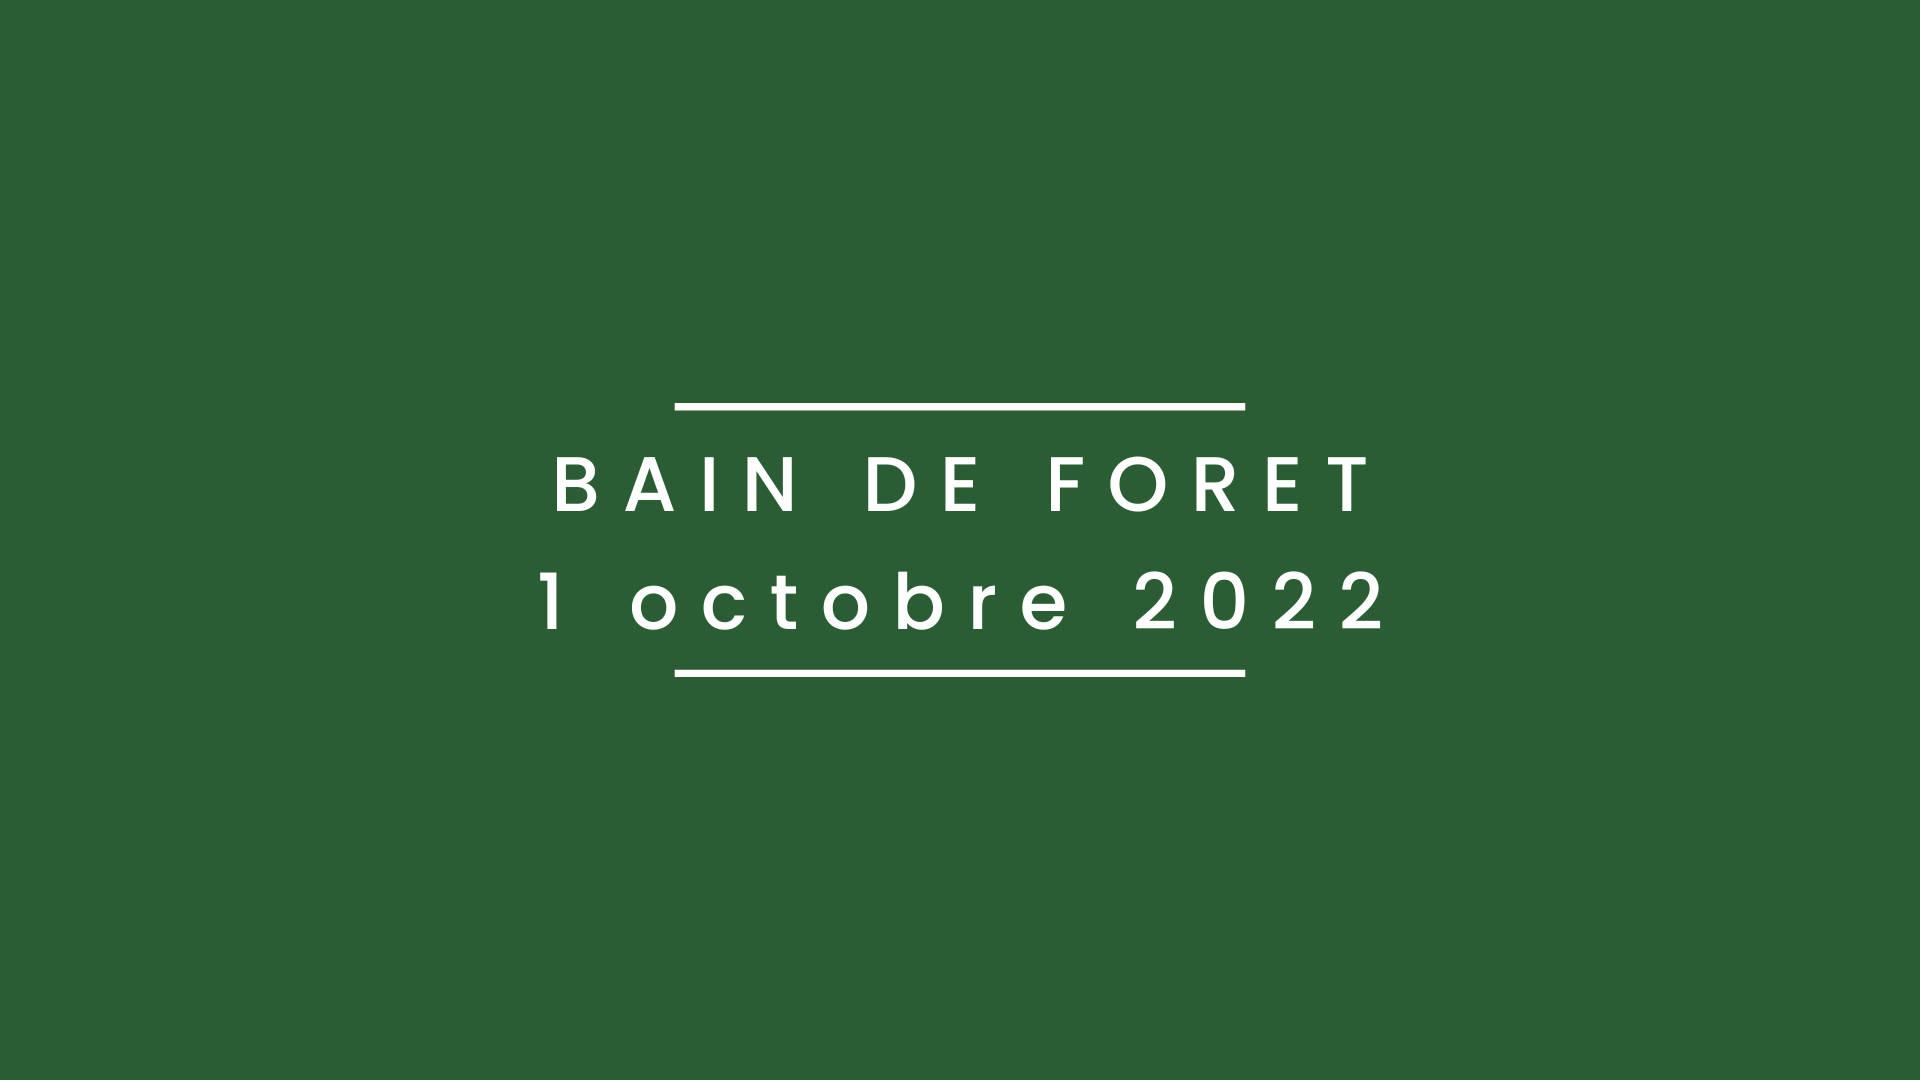 Bain de forêt 1 octobre 2022